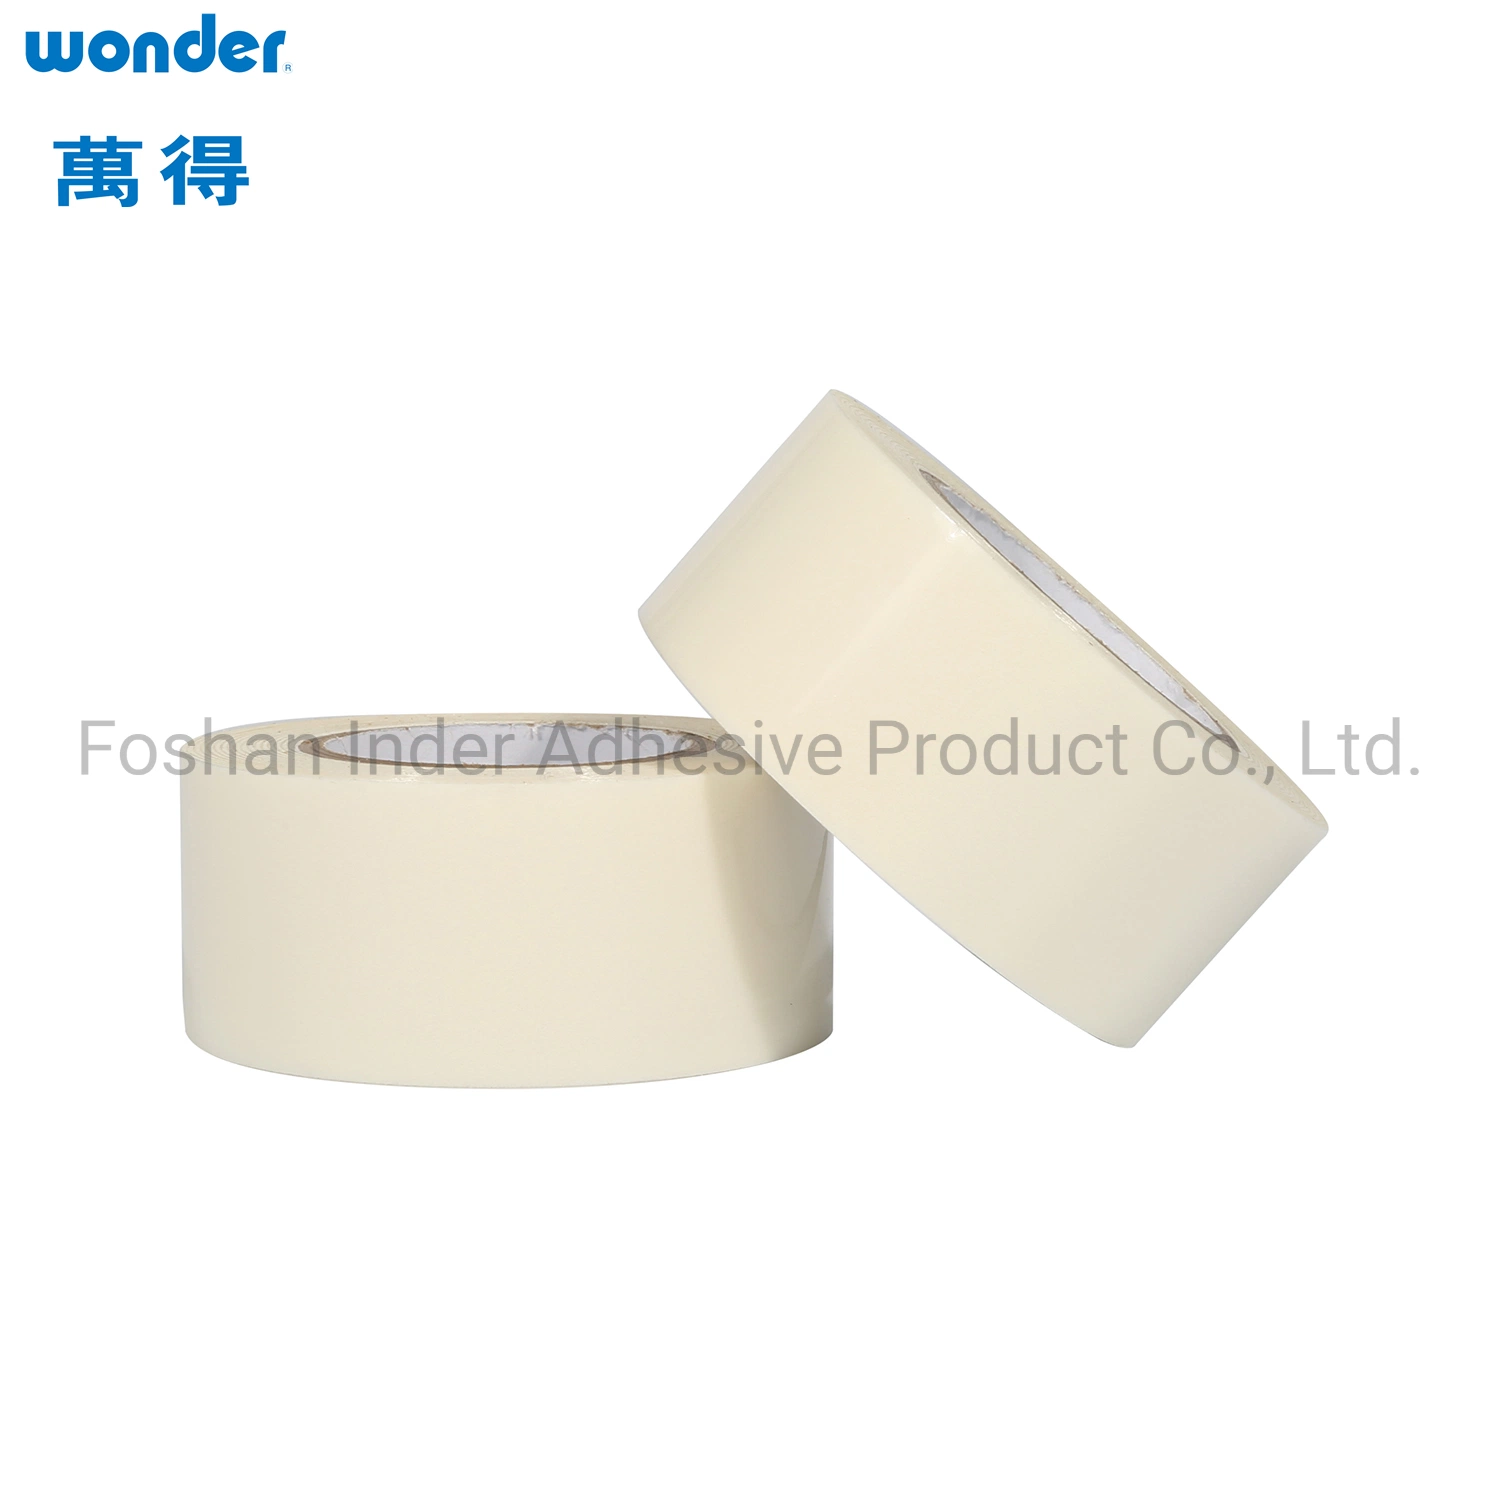 Акриловый клеящийся латексный материал, предназначенный для двусторонней печати марки Wonder Tissue Высокое качество